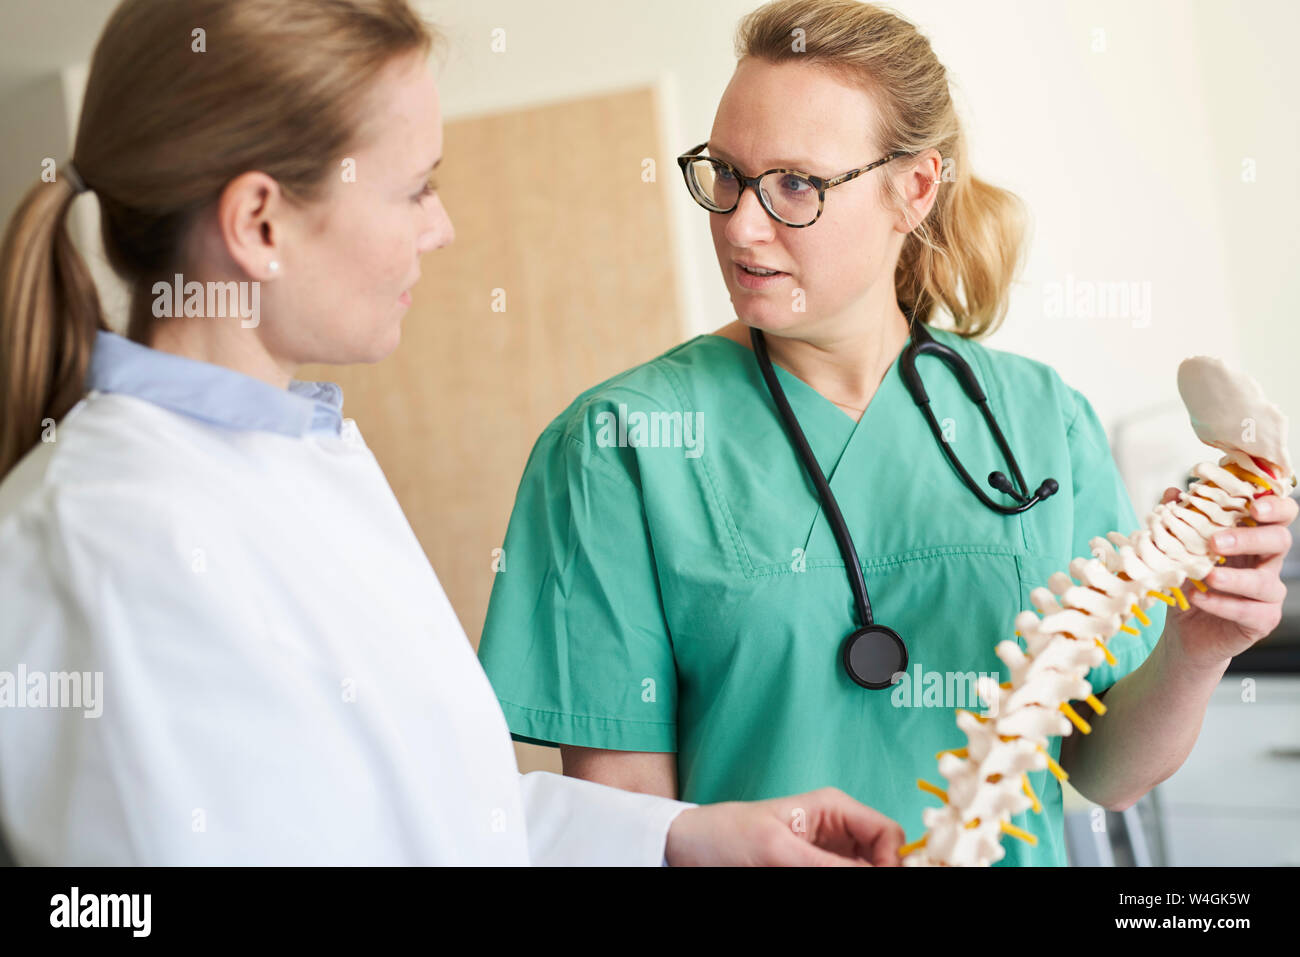 Ärztin und Frau in Scrubs mit wirbelsäule Modell sprechen Stockfoto